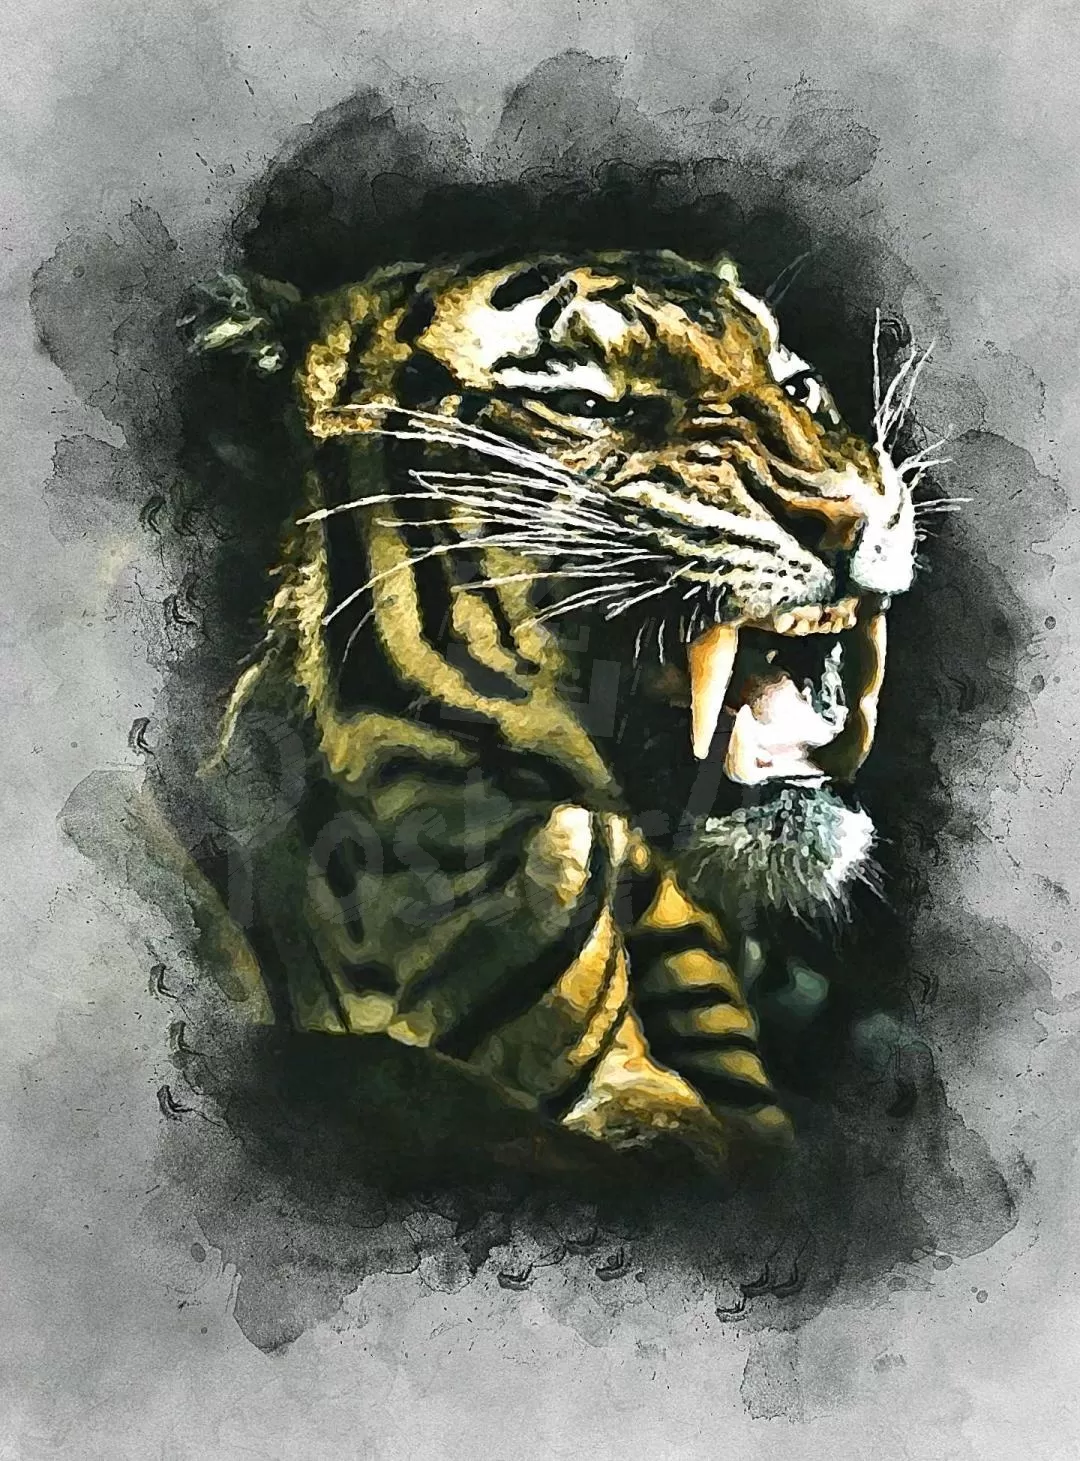 Tiger Poster4u.gr